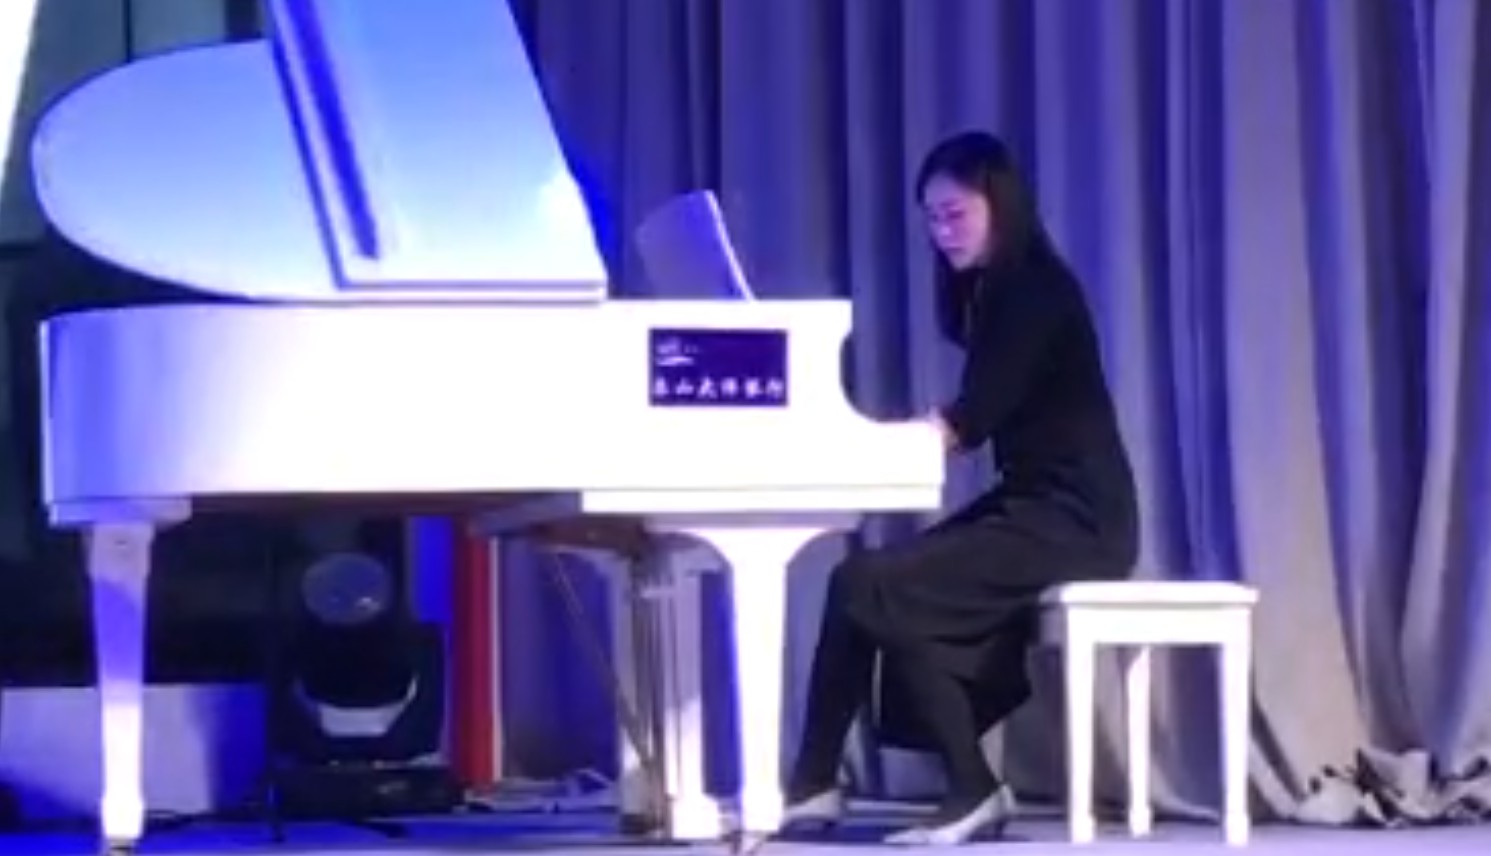 Diploma in Piano Performance at Bandar Saujana Putra by Shirley Wong Suet Li